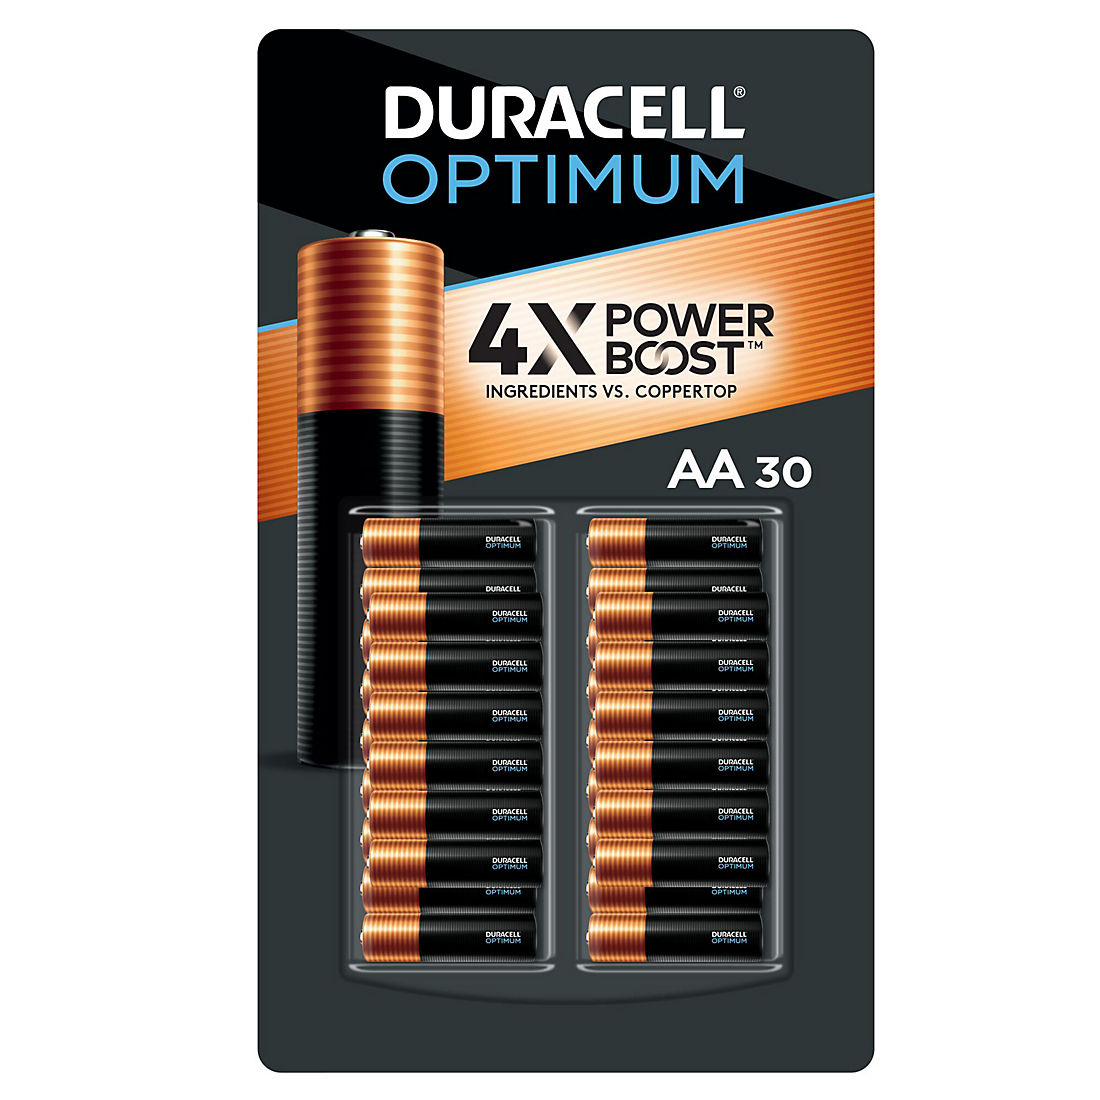 Duracell Optimum Aa30 Batteries Bj S